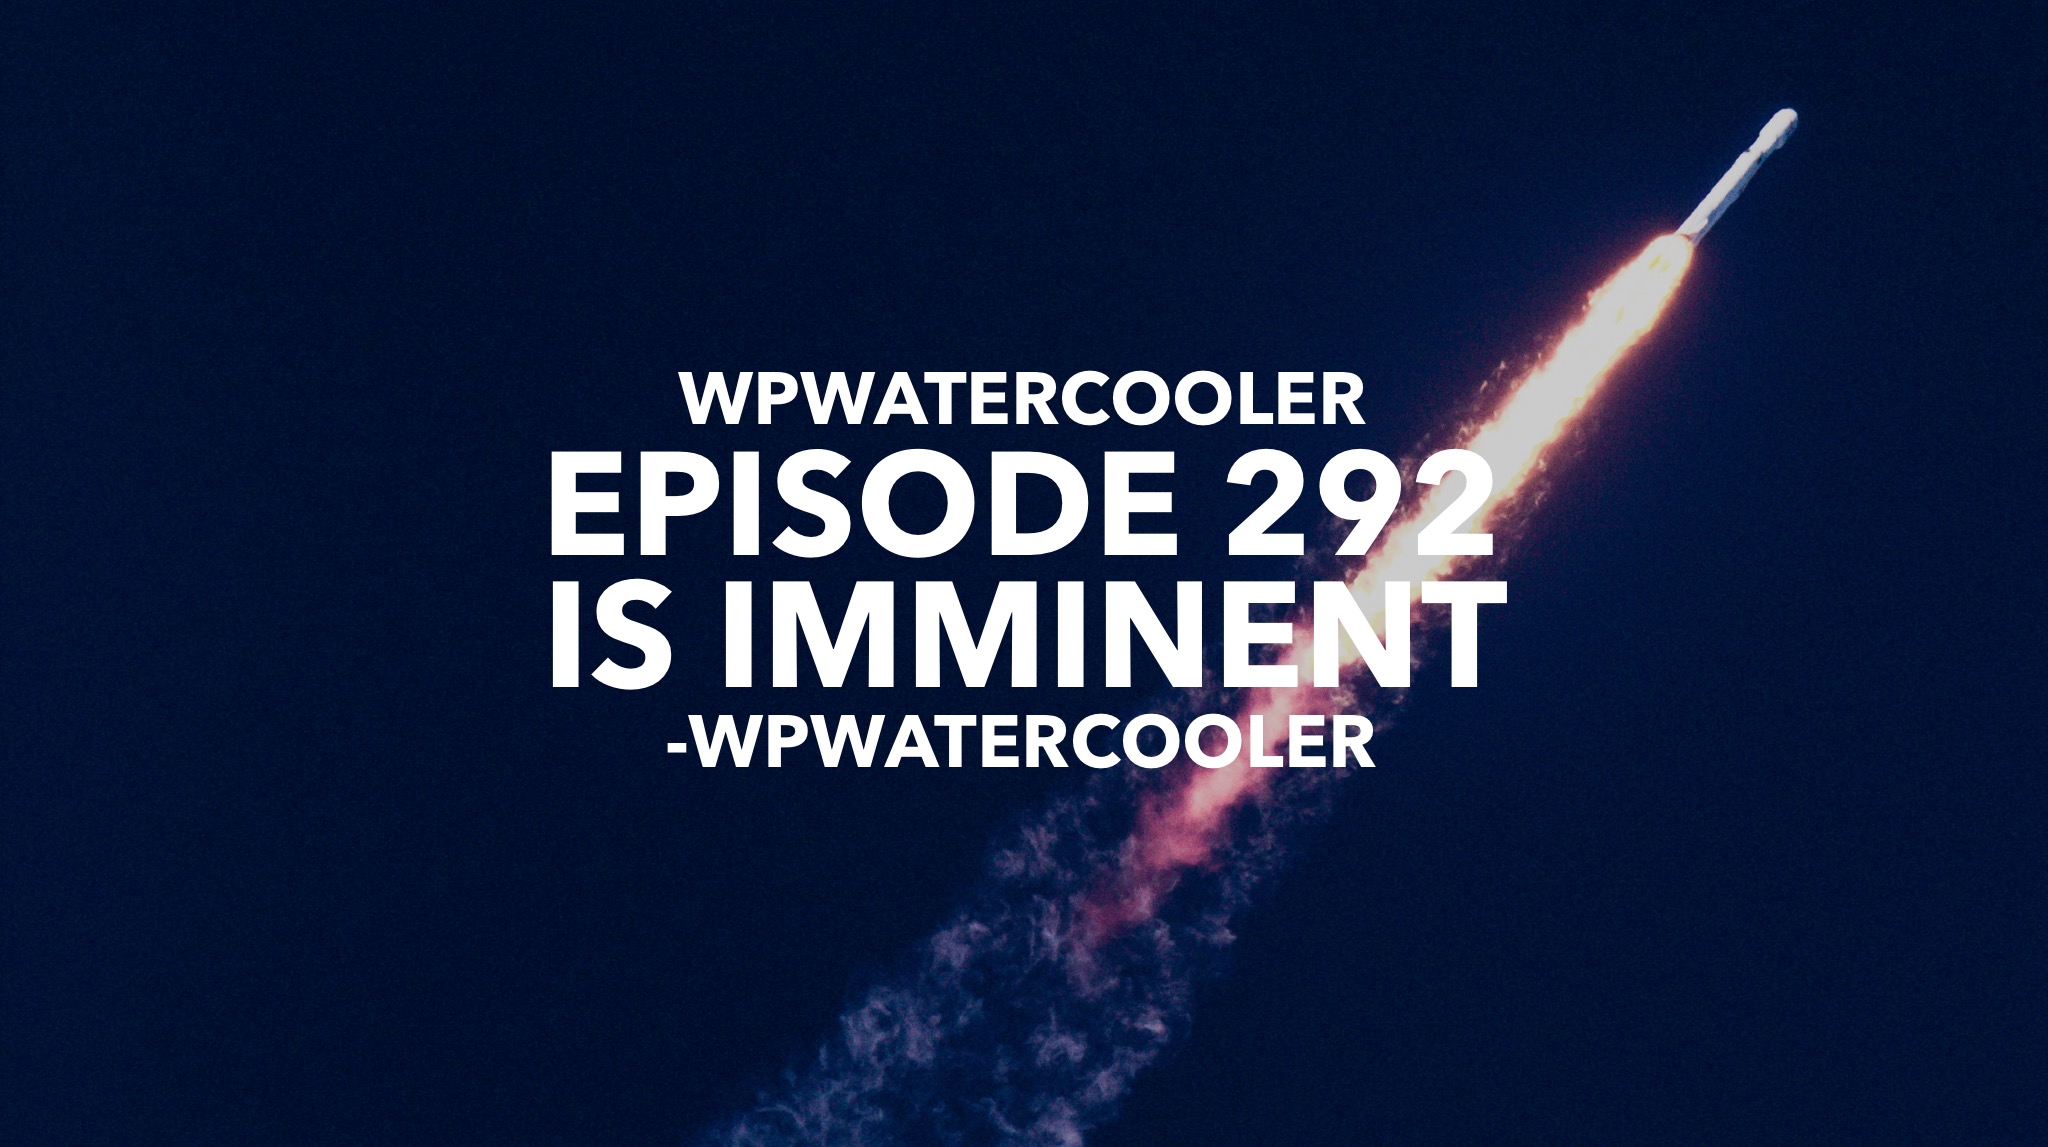 EP292 – WPwatercooler episode 292 is imminent